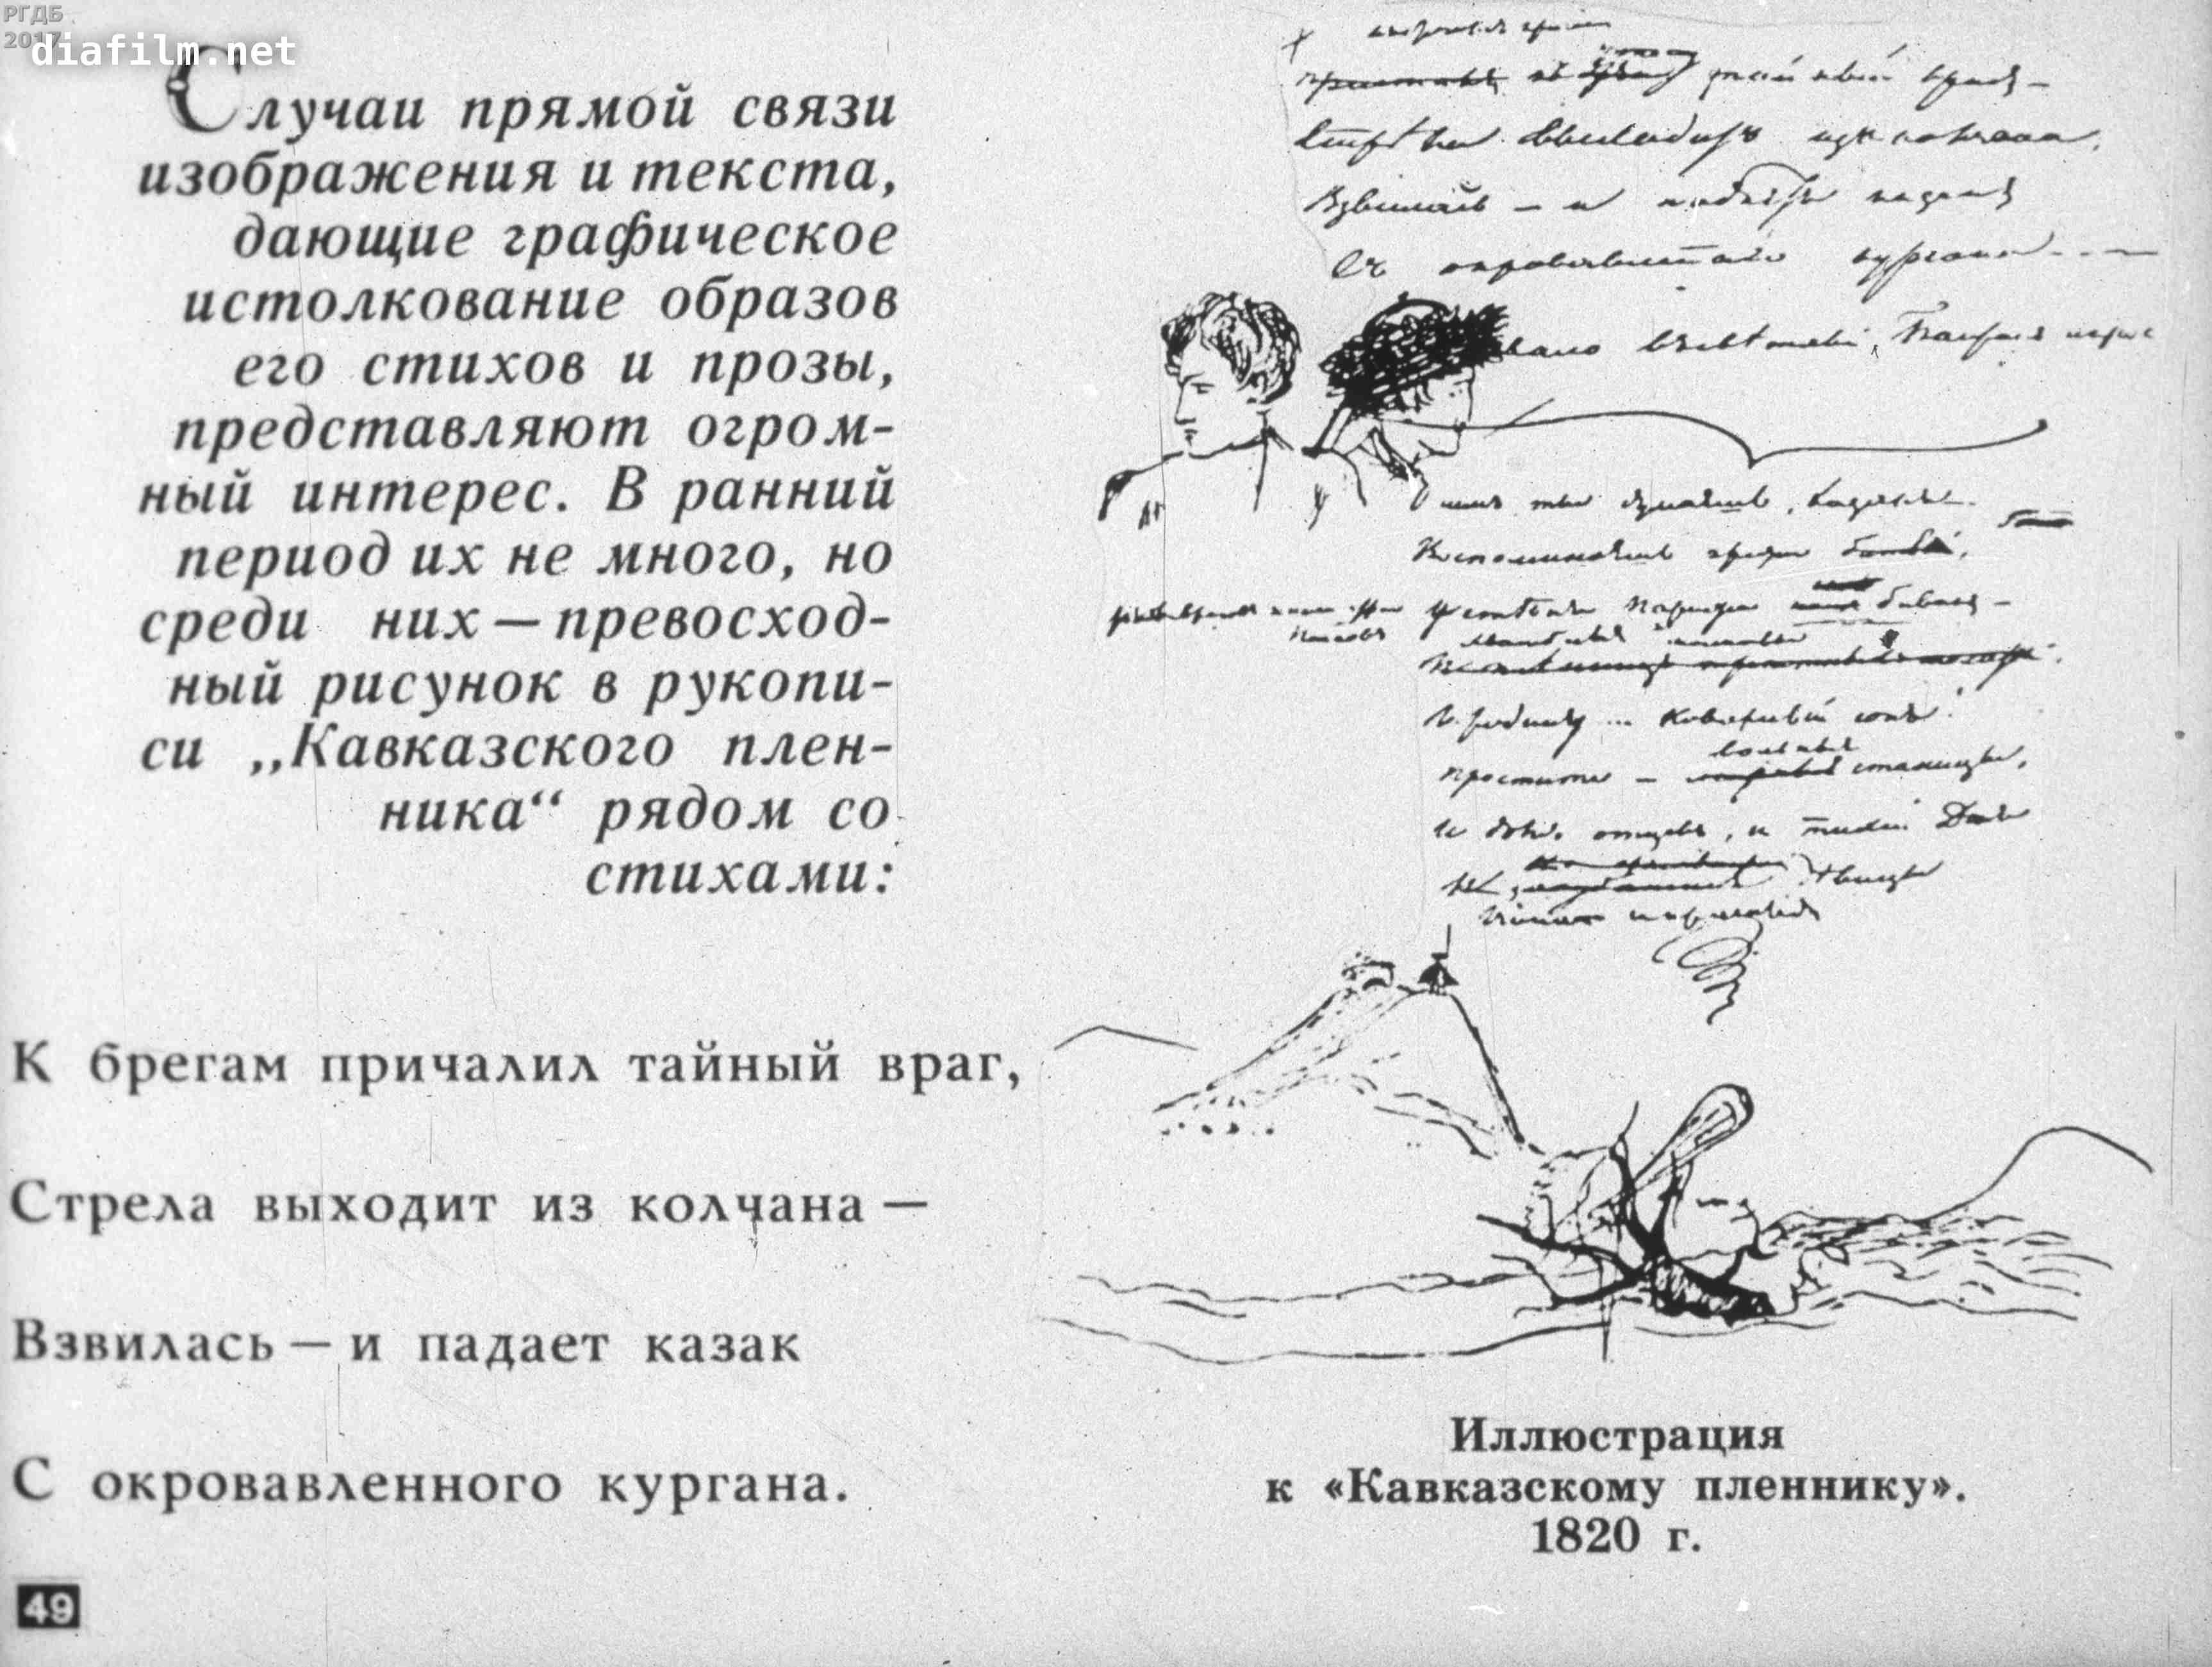 Иллюстрация к стихотворению Пушкина